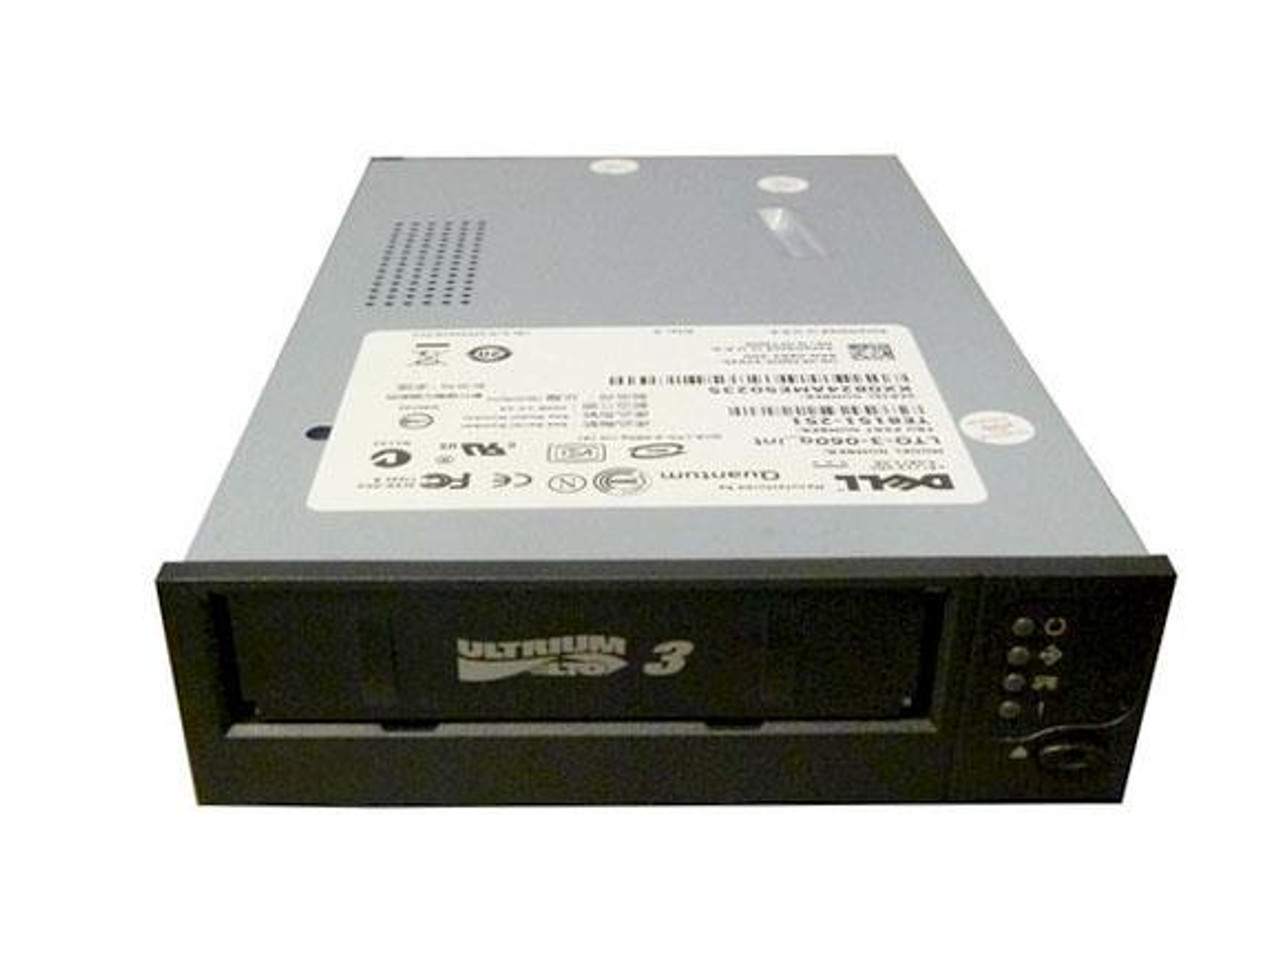 LTO-3-060 - Dell 400/800GB Ultrium LTO-3 SCSI/LVD HH Internal Tape Drive